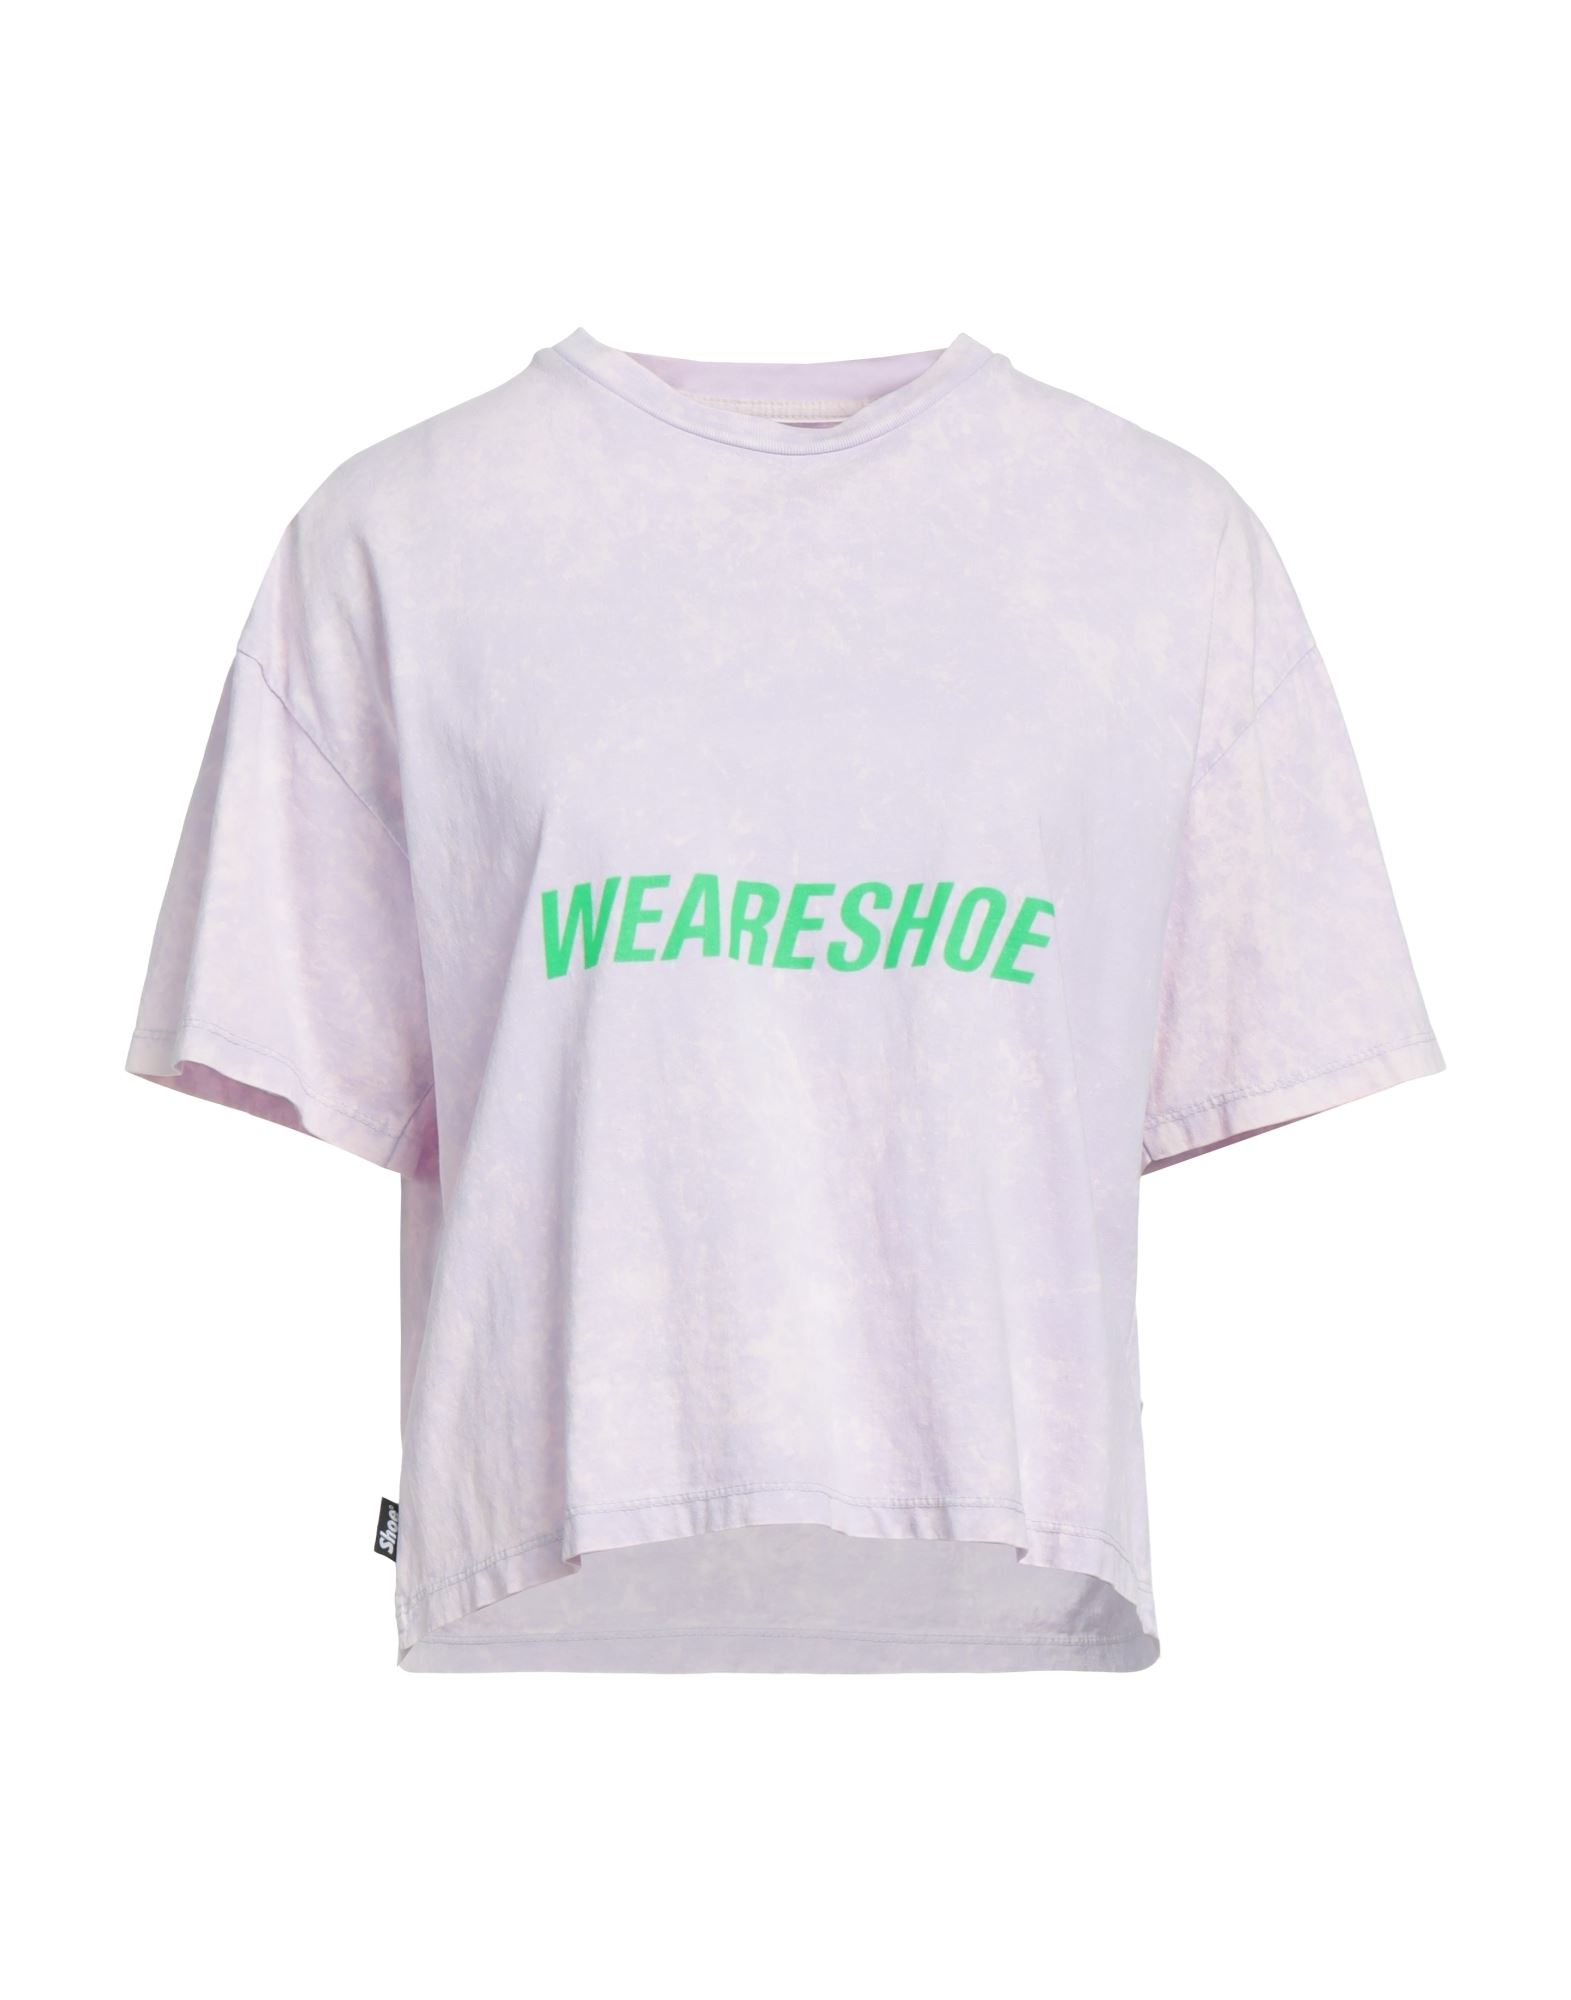 Shoe® Shoe Woman T-shirt Lilac Size Xs Cotton In Purple